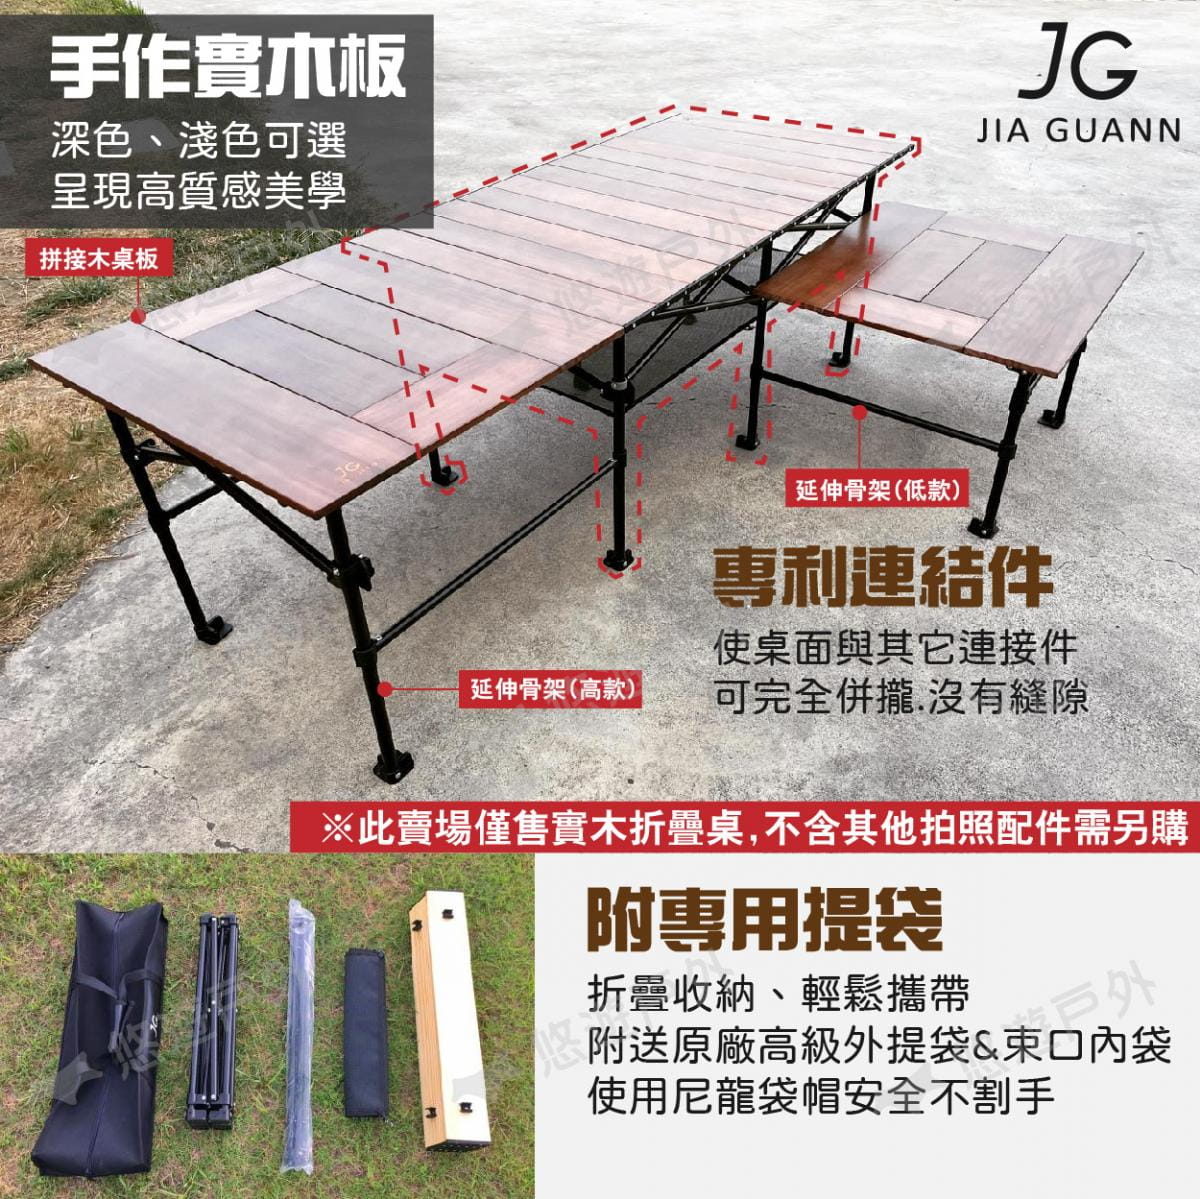 【JG Outdoor】T1實木折疊收納桌-長方形款 深色 JG-T0011 悠遊戶外 6